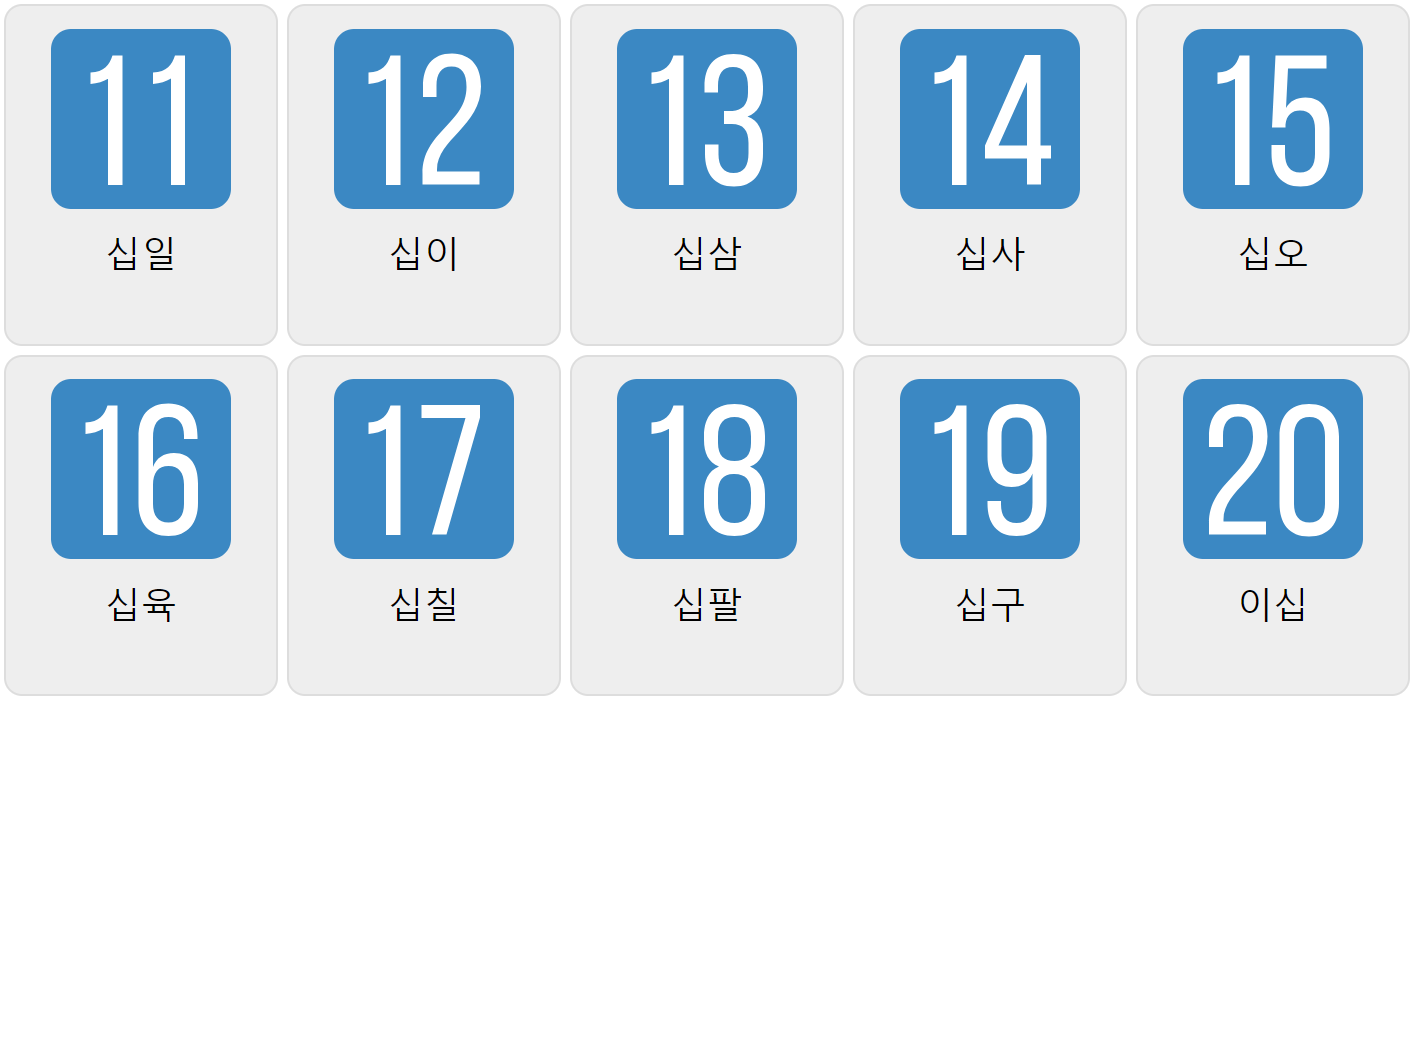 Numbers 11-20 in Korean